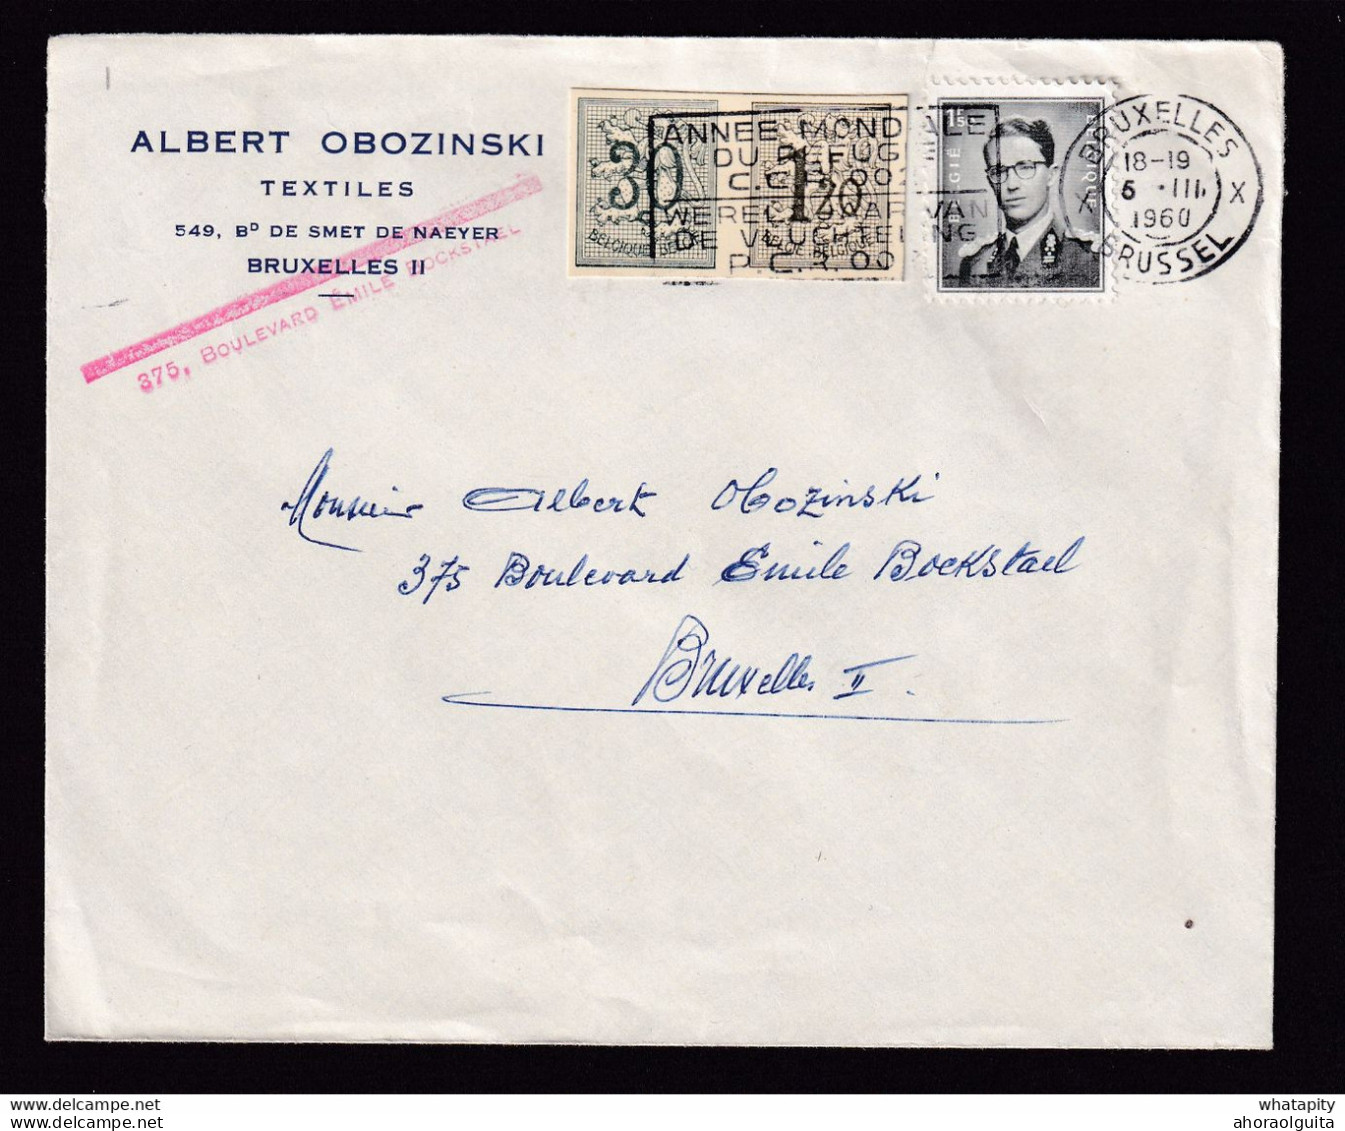 DDBB 750 - Enveloppe Avec 2 DECOUPURES Entiers Postaux Lions Héraldiques + TP Lunettes BRUXELLES 1960 - Cartes Postales 1951-..